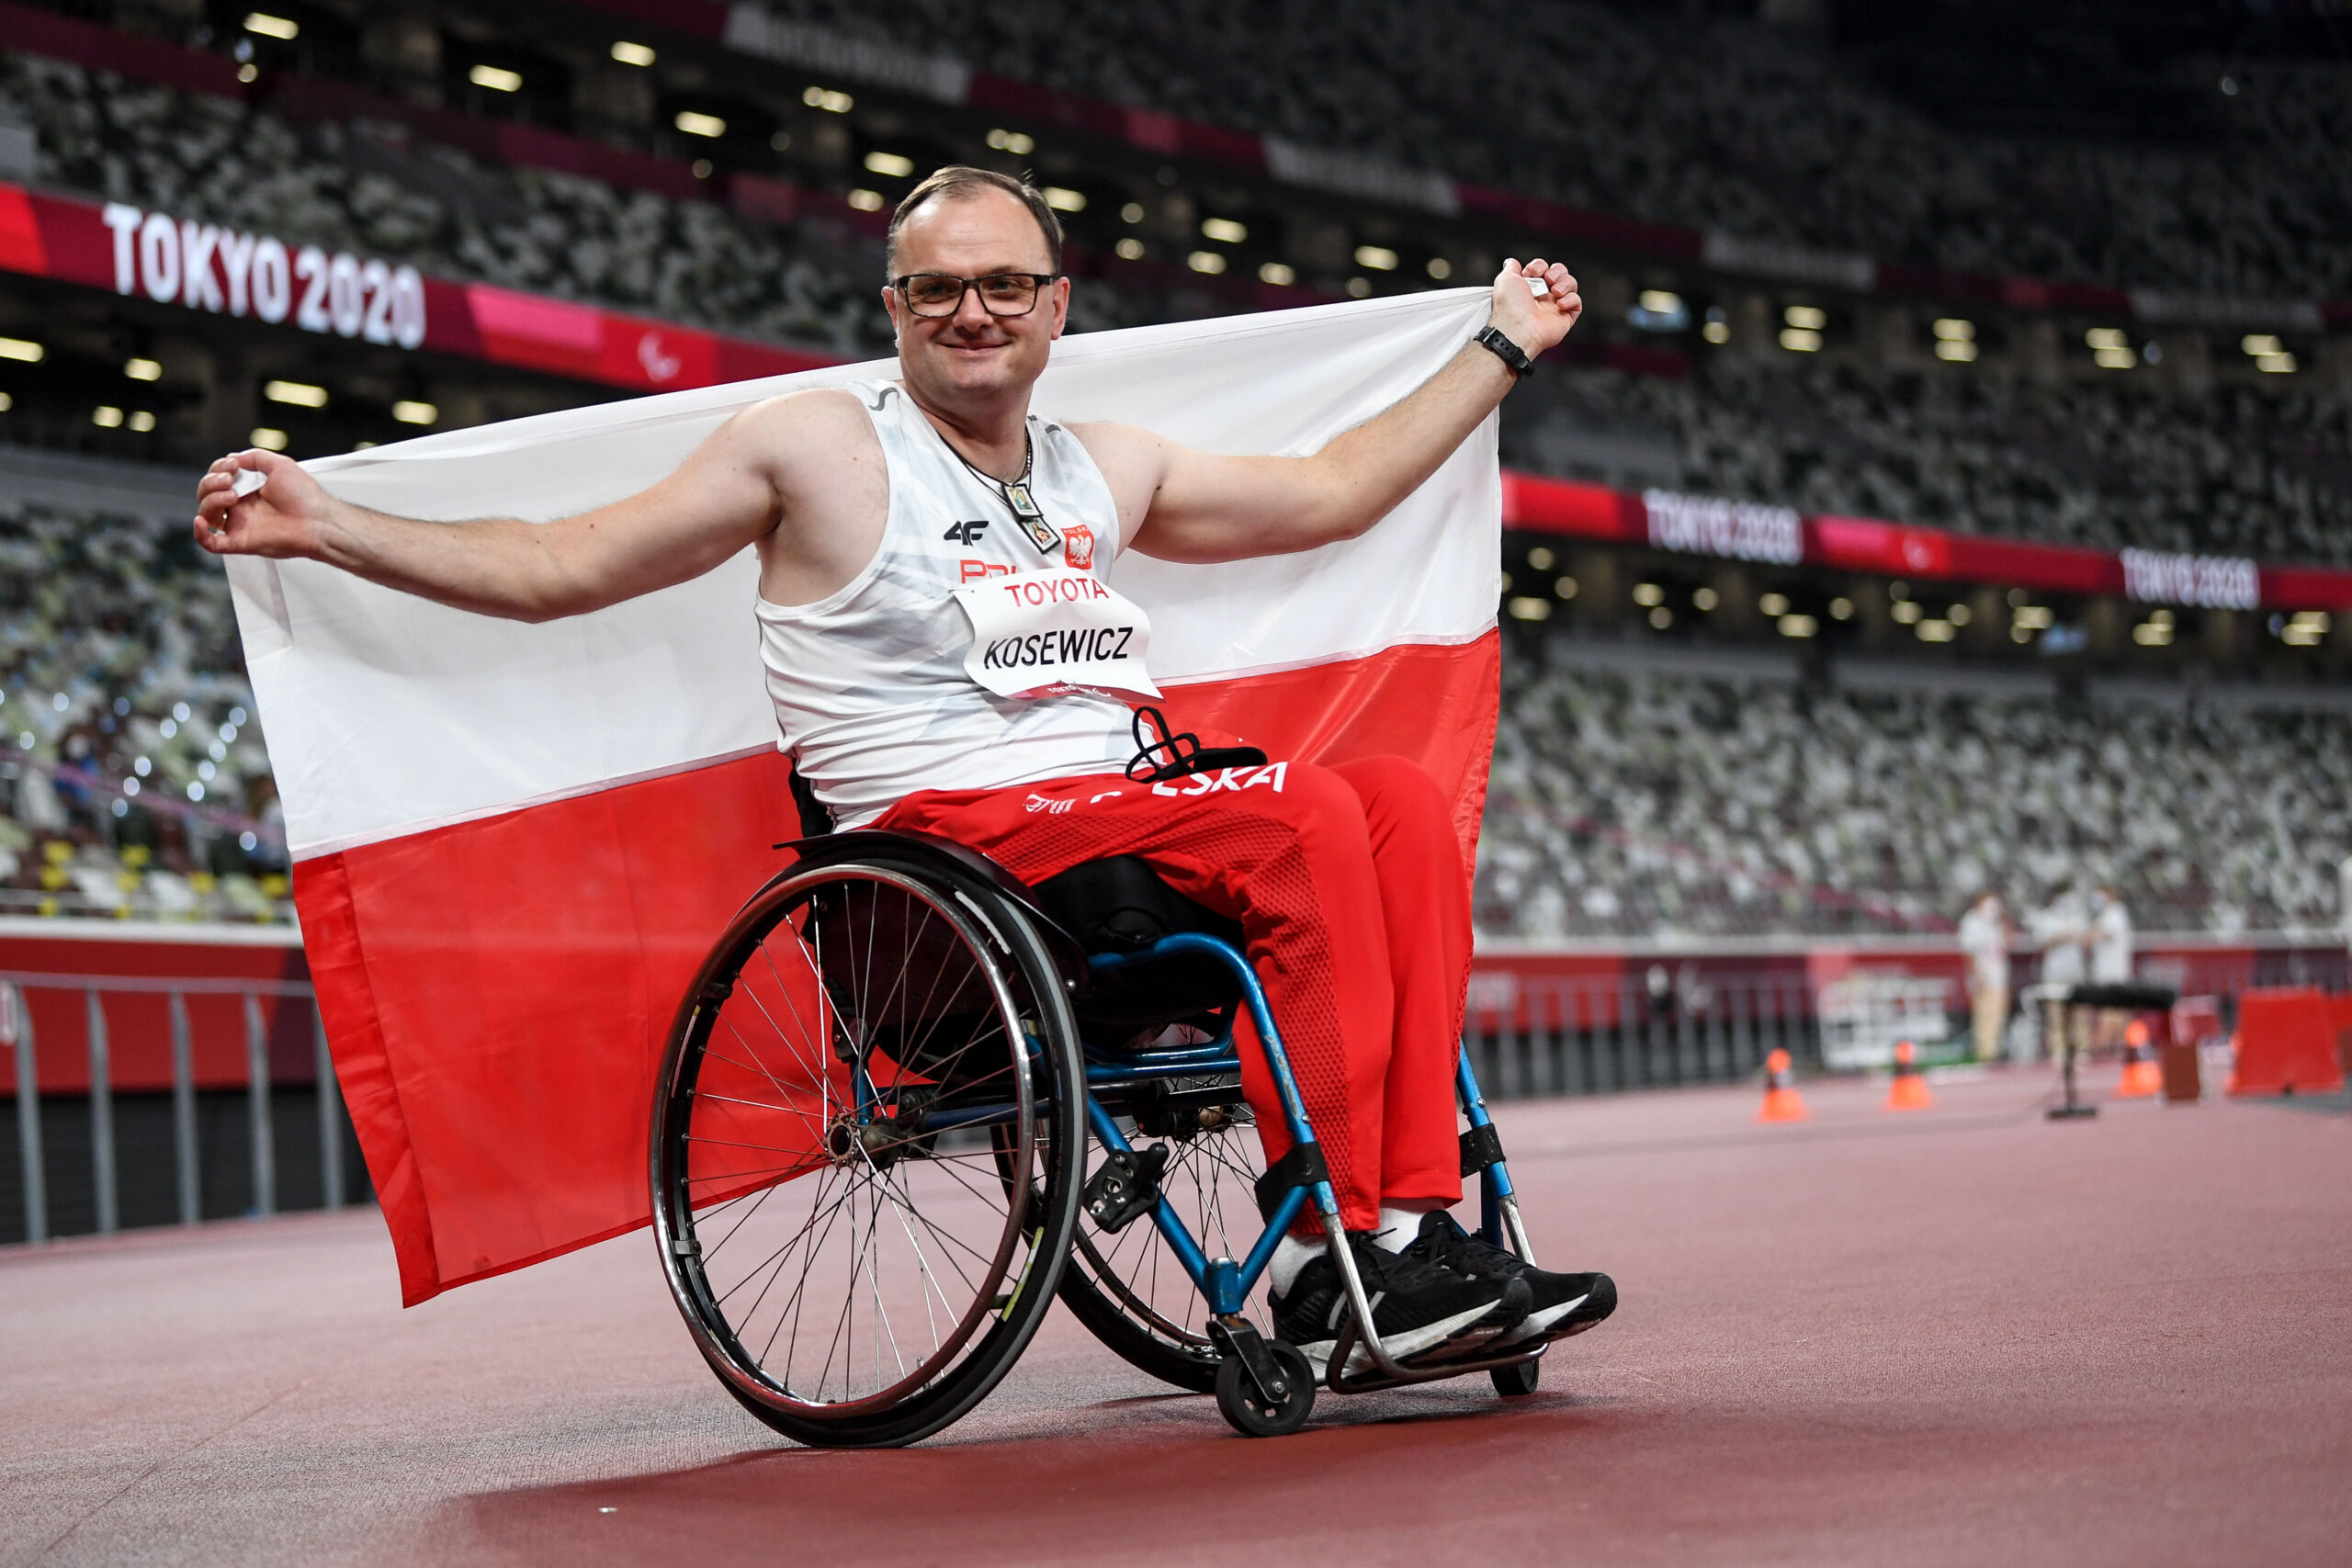 Na zdjęciu znajduje się uśmiechnięty mężczyzna na wózku (Piotr Kosewicz), który trzyma za plecami dużą flagą Polski.